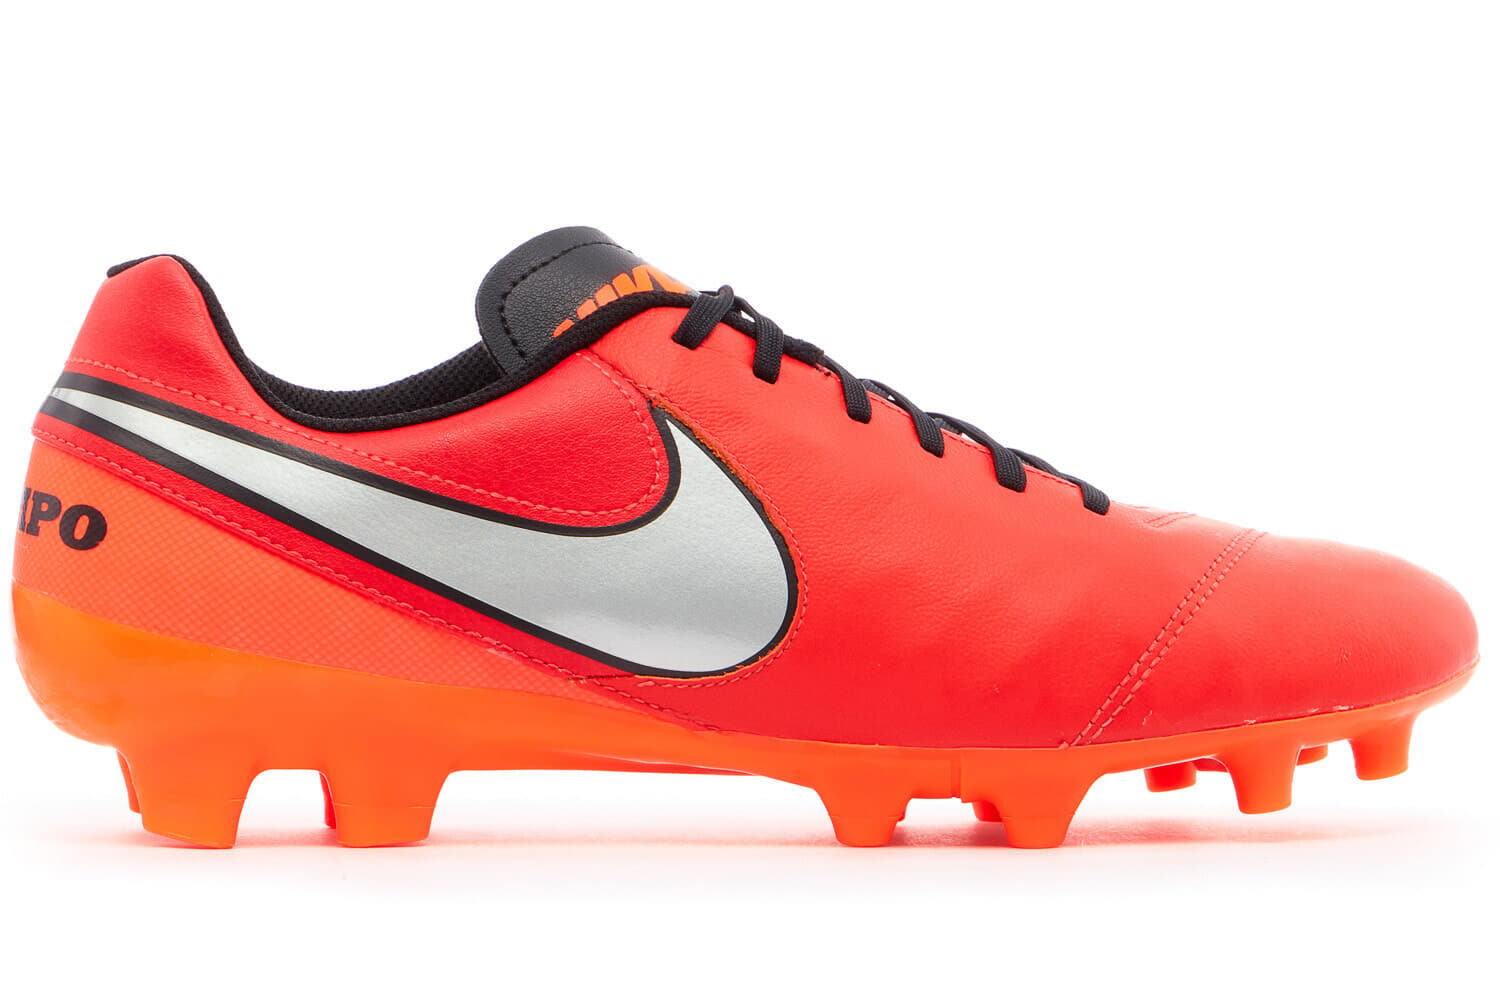 Nike Tiempo Genio II Leather Football Boots *In Box* FG